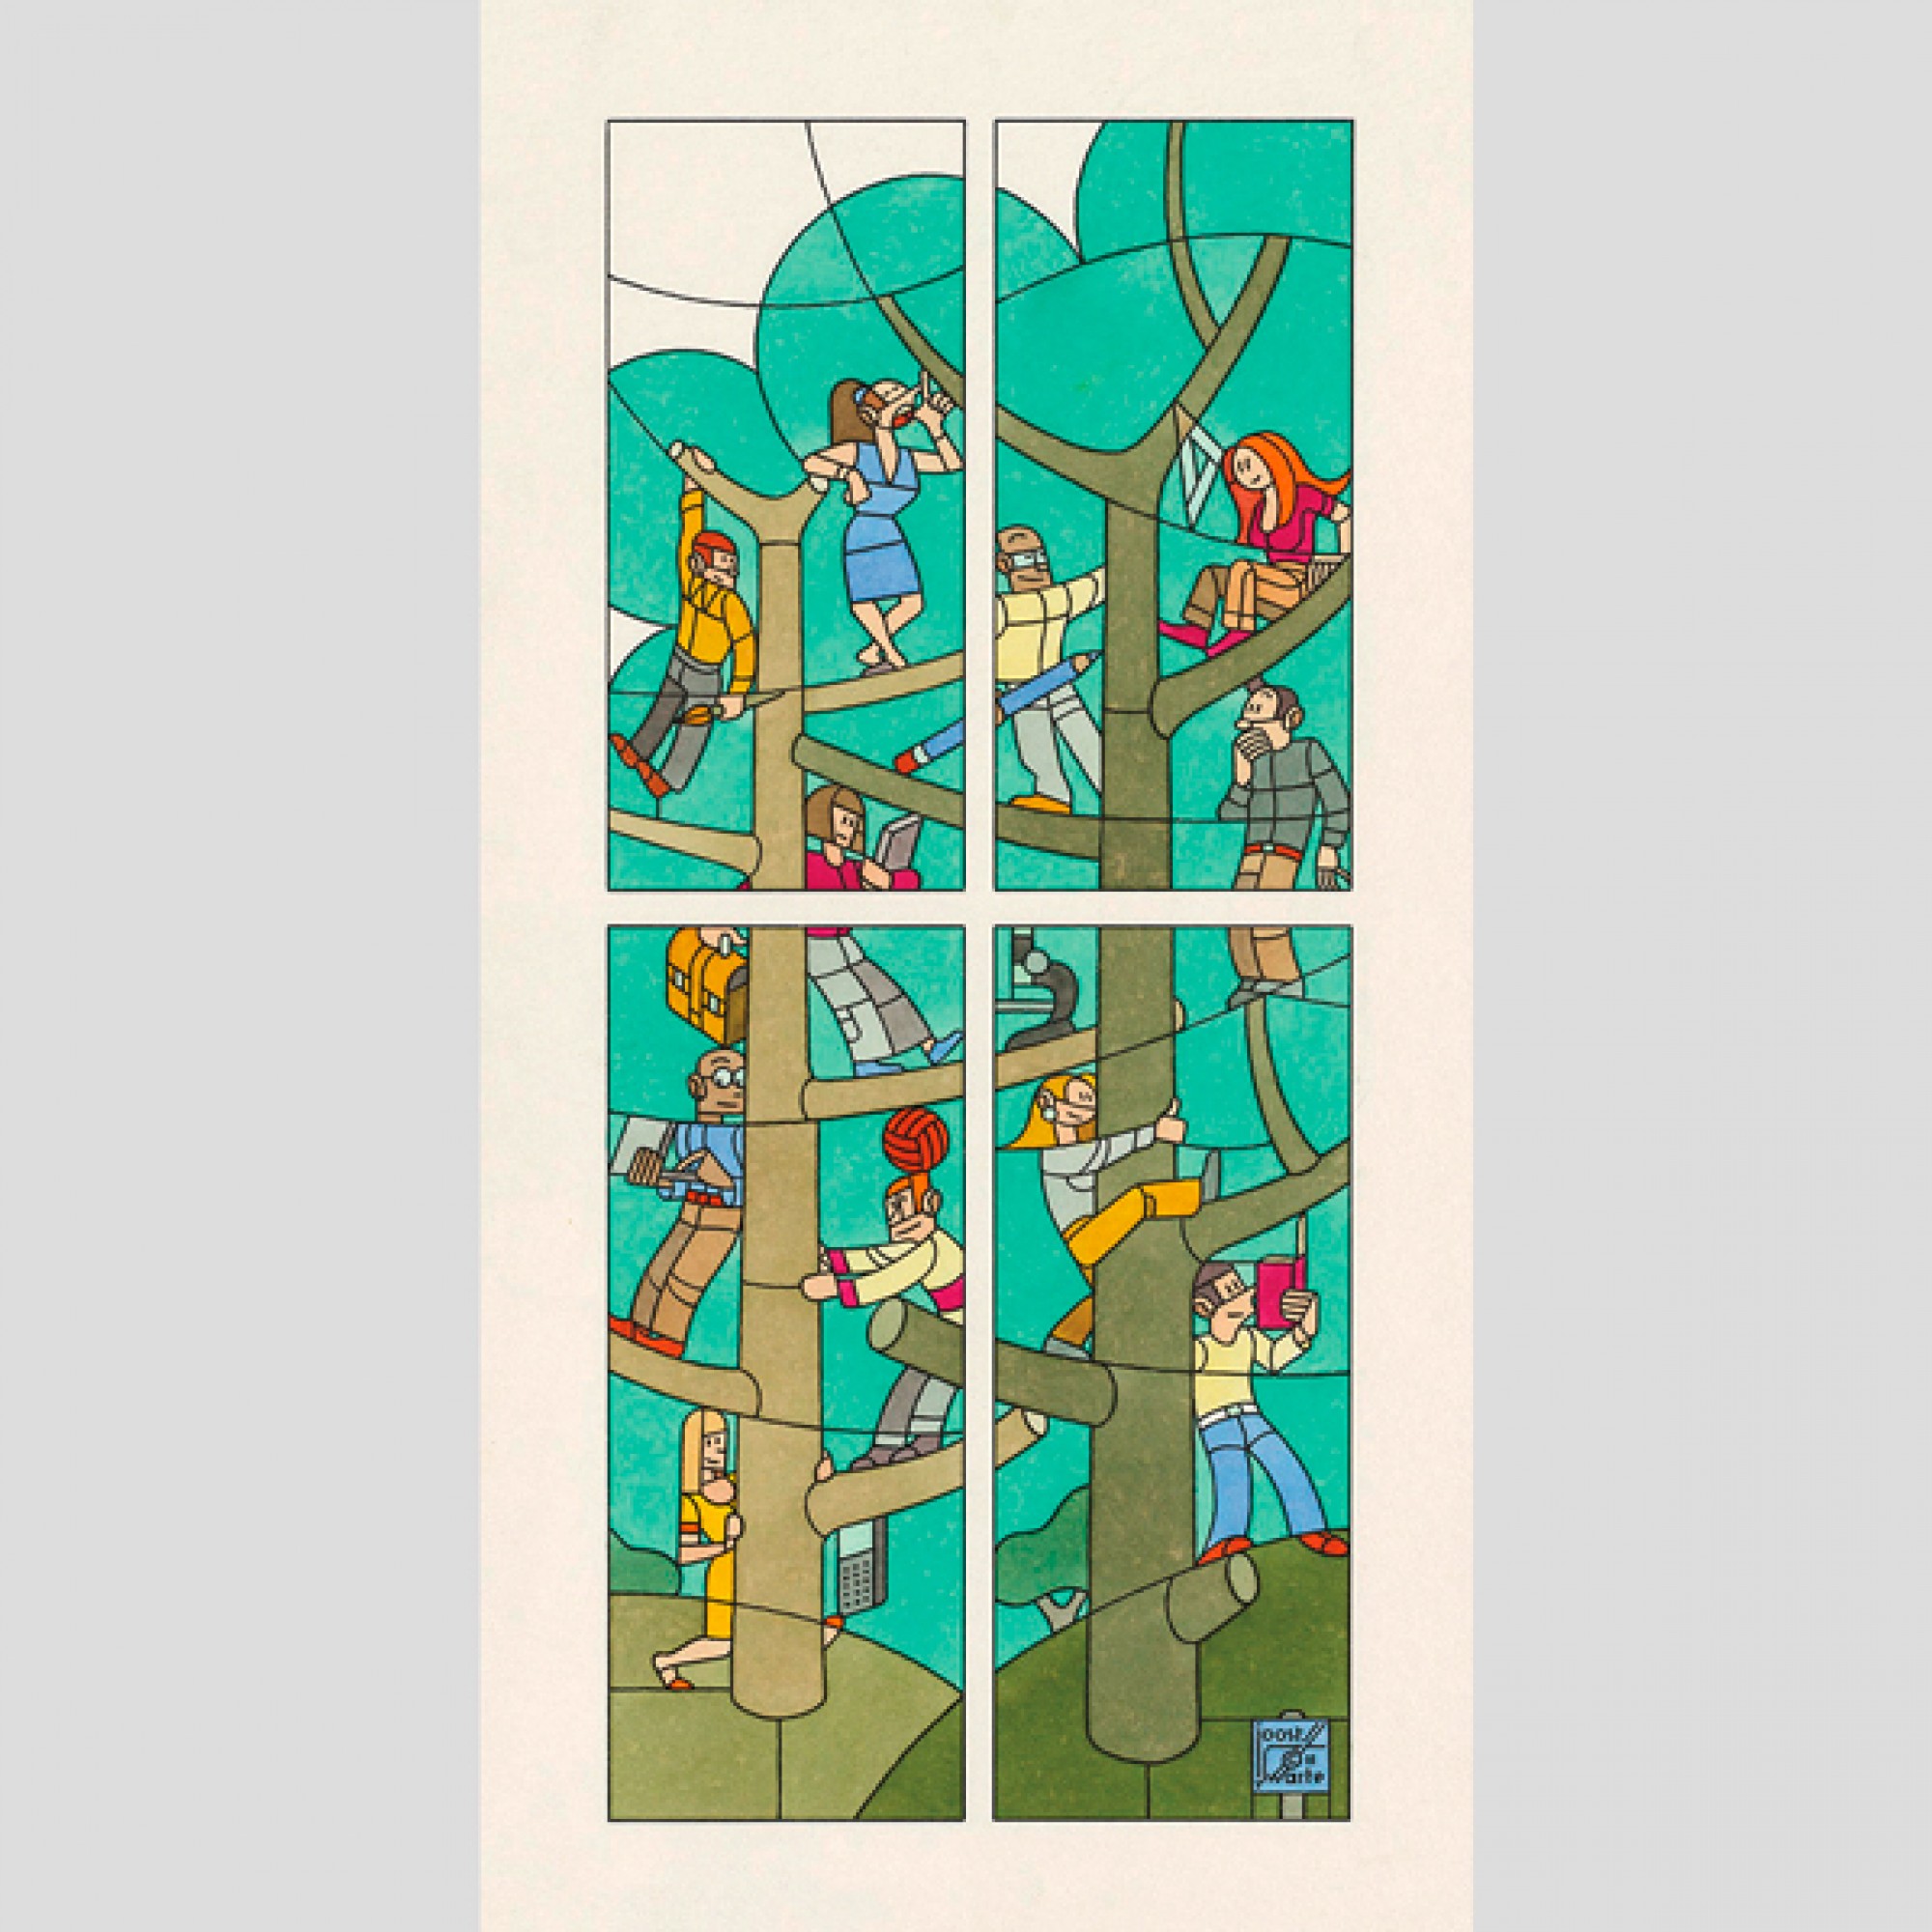 Zeichnung für Glasfenster, Bavinick Schule, Den Haag, 2014, Tuschezeichnung und farbige Tusche auf Papier. (Joost Swarte / Cartoonmuseum Basel)